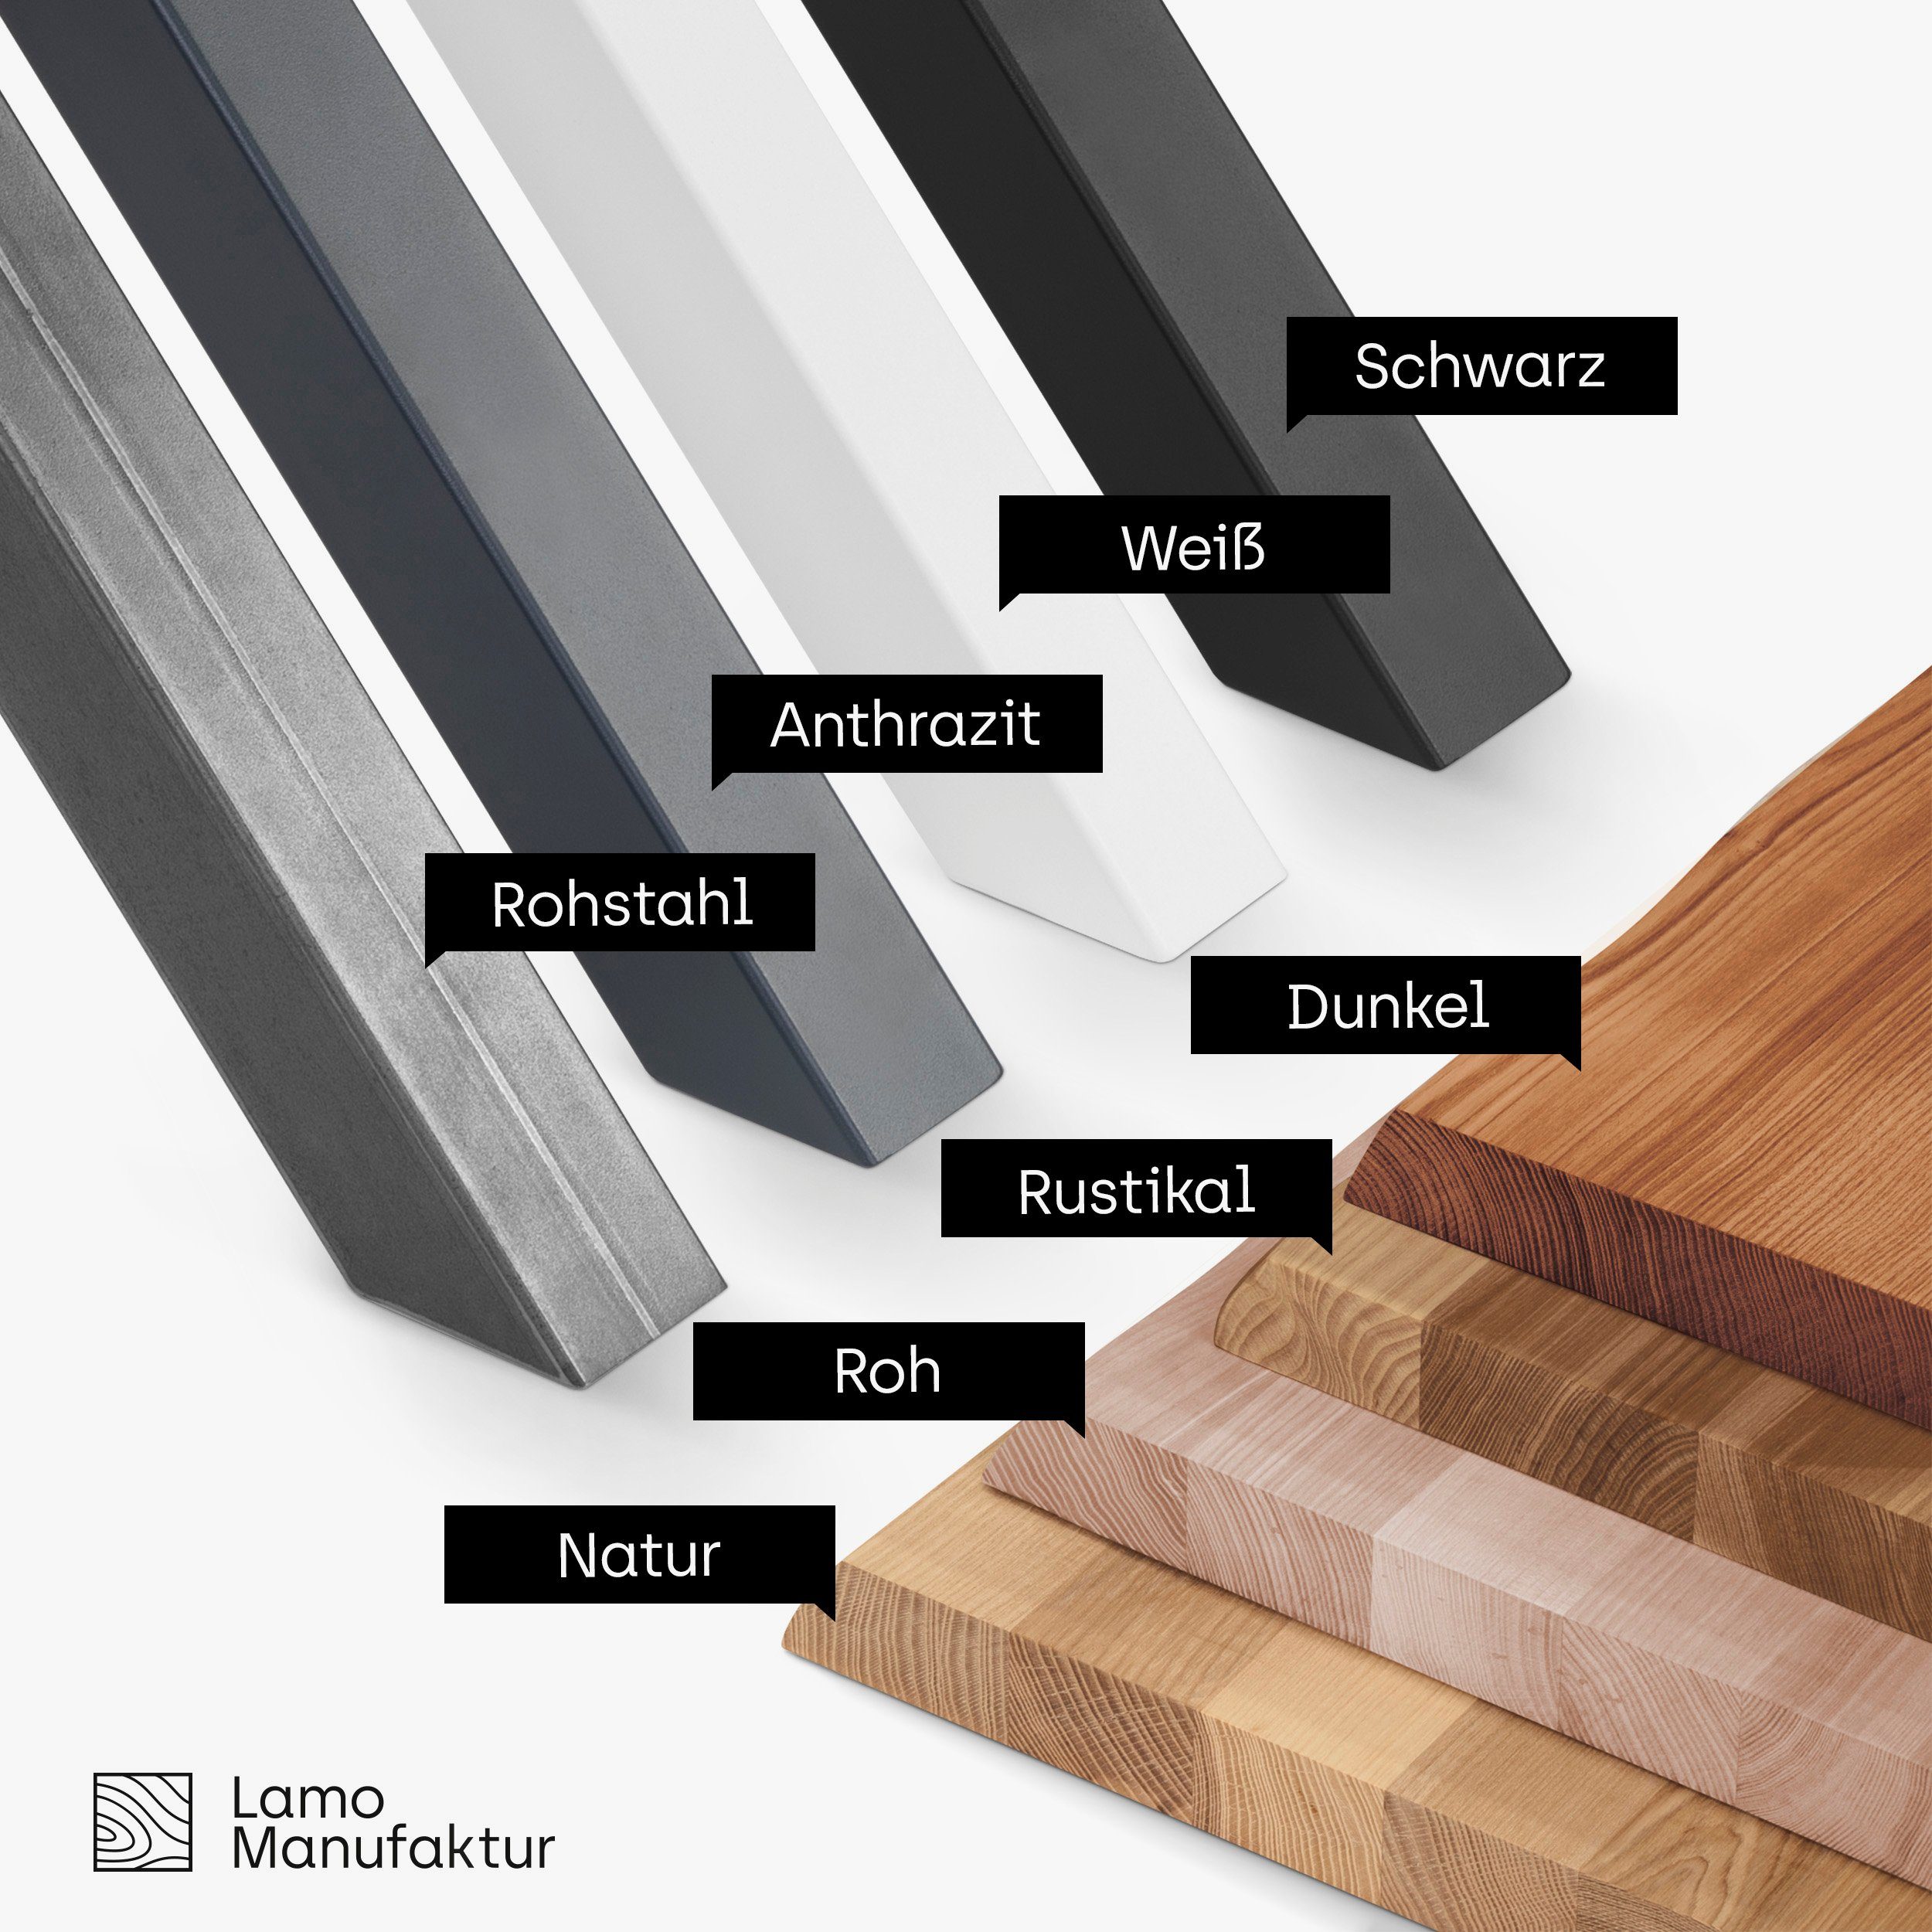 massiv Anthrazit Baumkantentisch Tisch), Massivholz inkl. | Esstisch Metallgestell Manufaktur Baumkante Dunkel Design LAMO (1